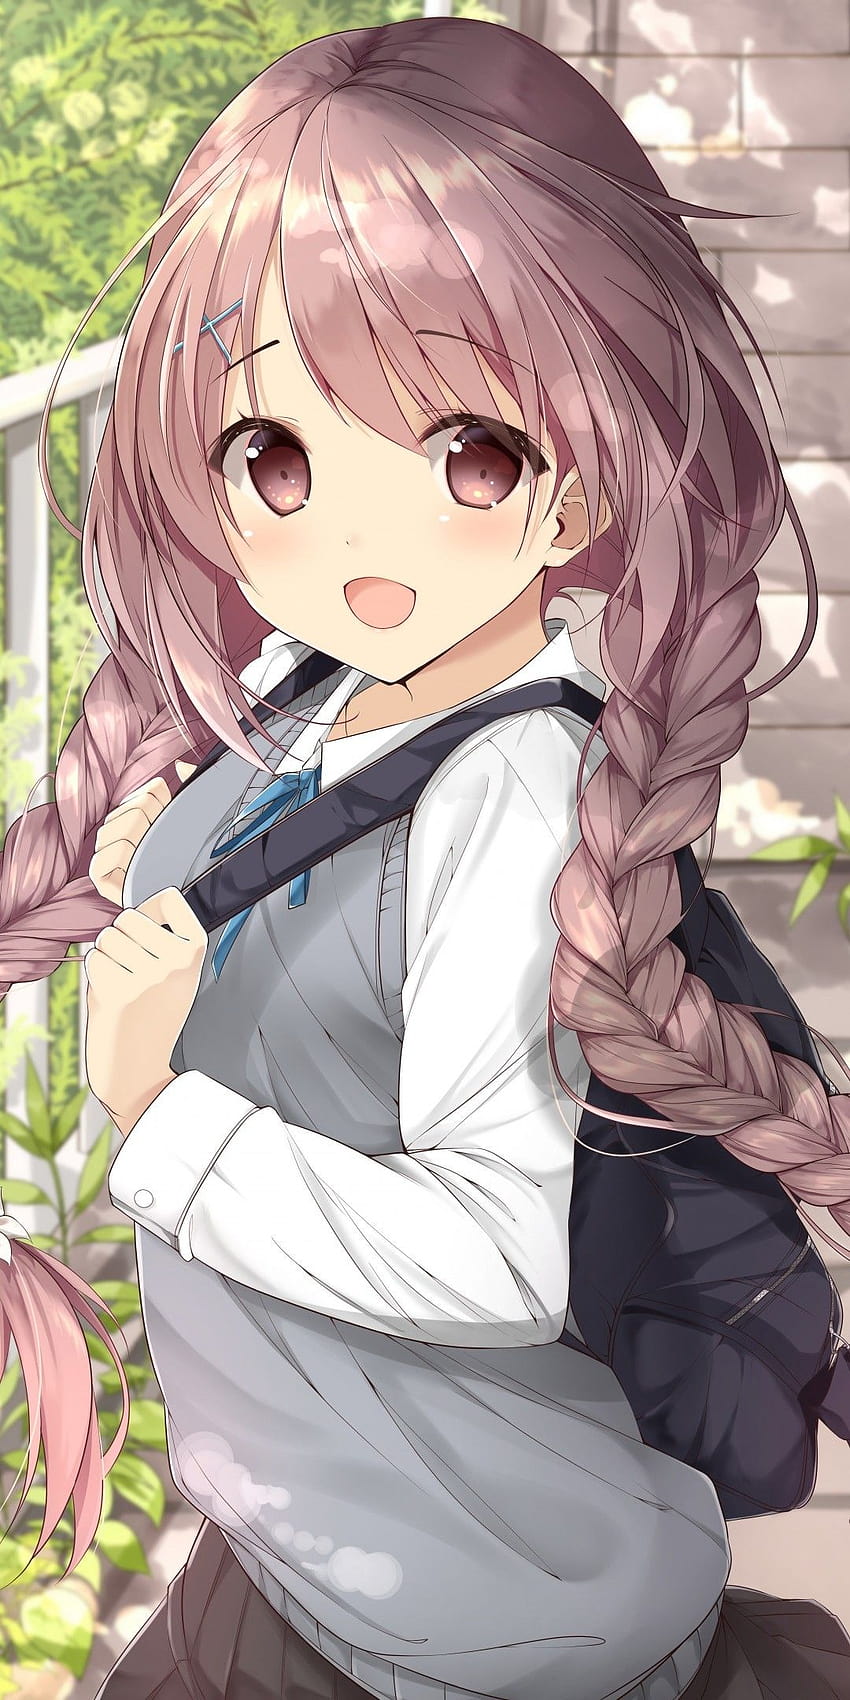 Uniforme Cute Anime Girl School, uniforme fofo e bonito de anime girl Papel de parede de celular HD